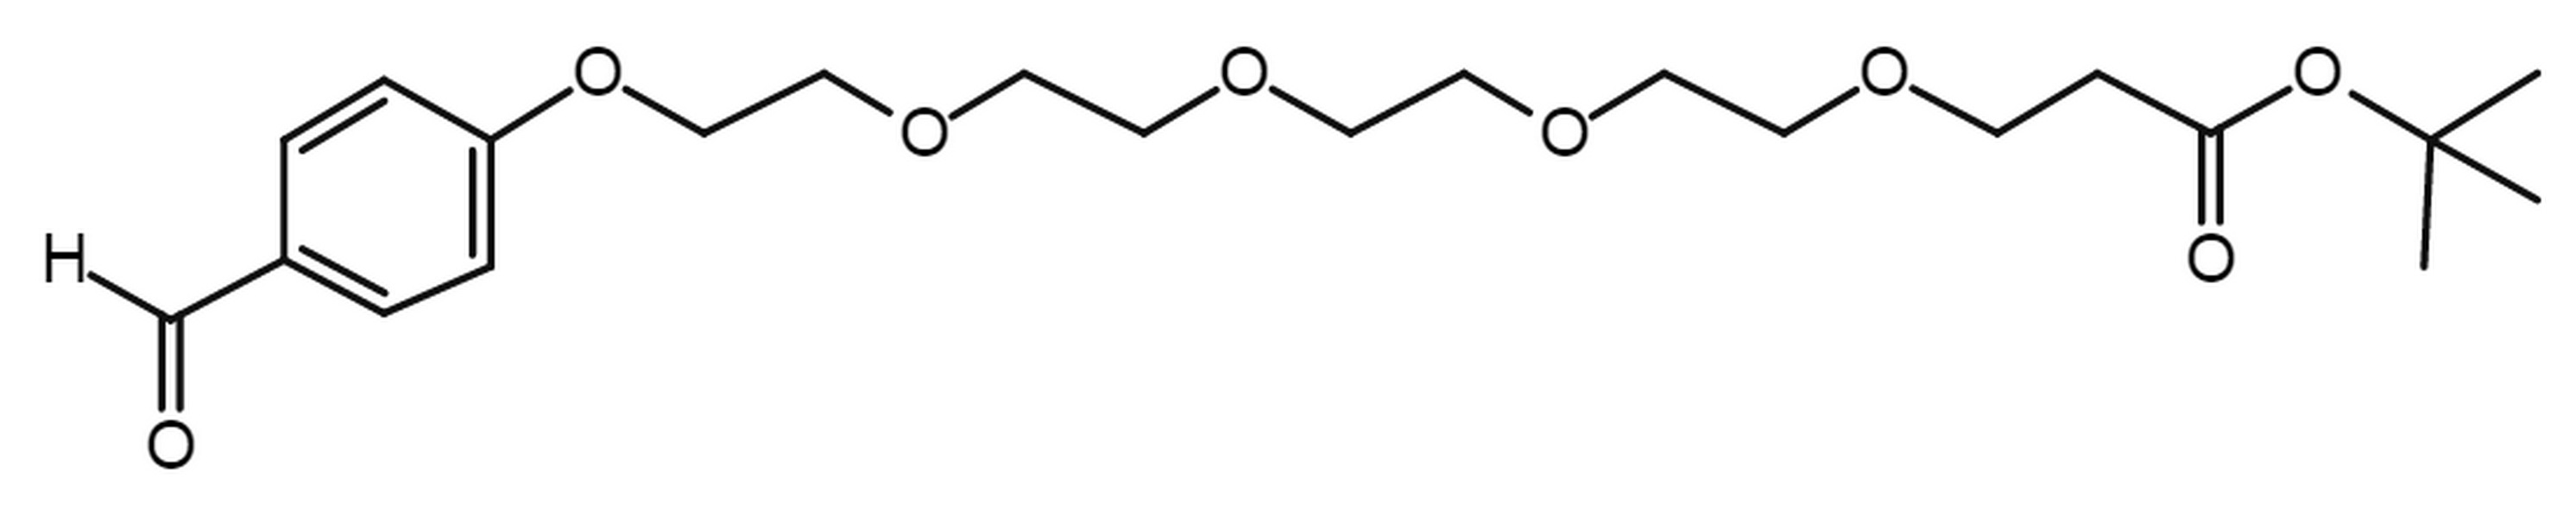 Ald-Ph-PEG5-t-butyl ester